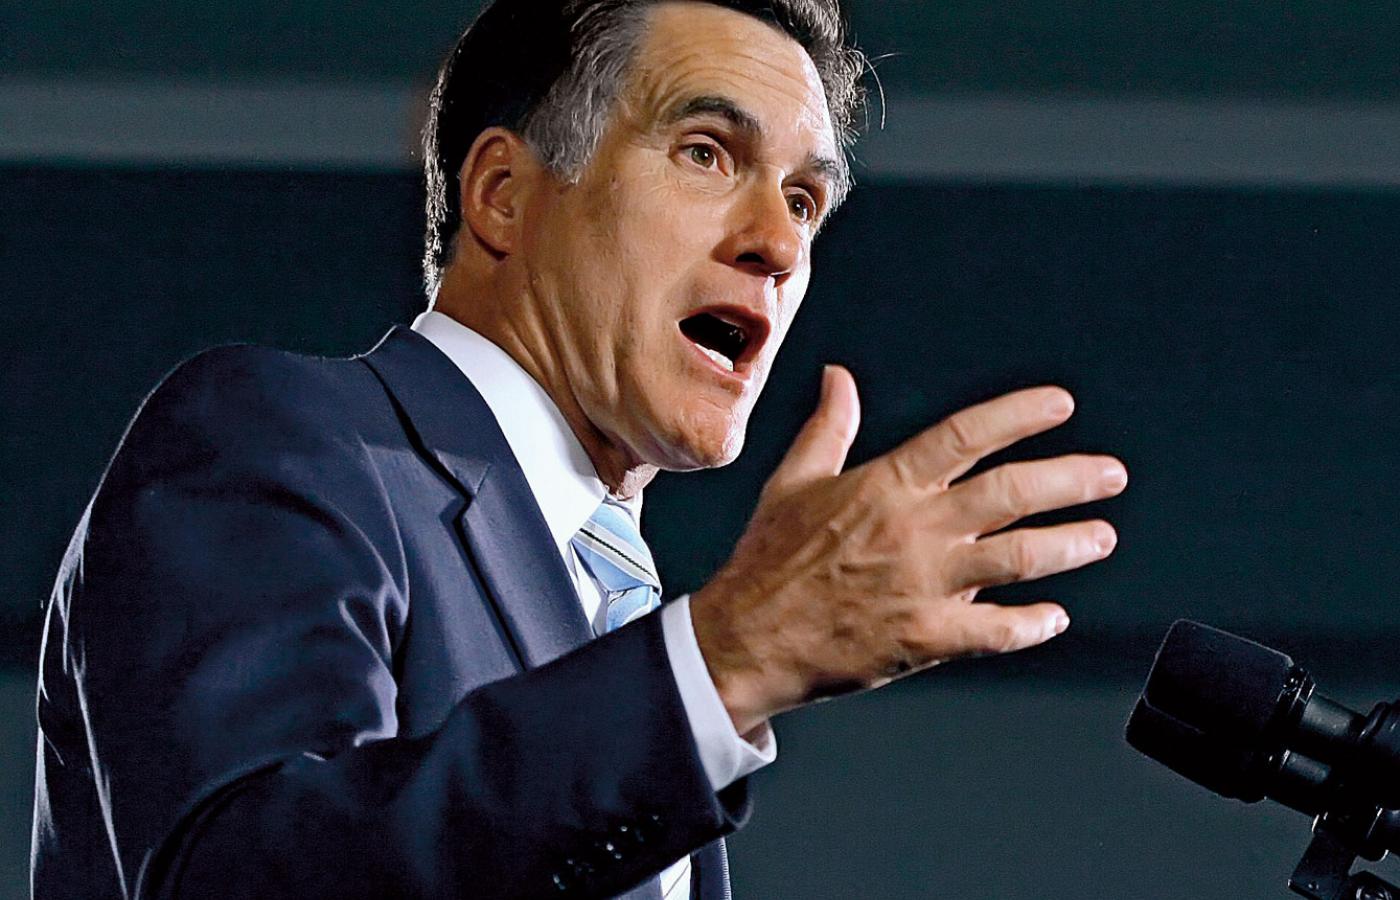 Mitt Romney zdecydowanie przewodzi w sondażach i zbiórce funduszy na kampanię. Największym jego atutem jest wieloletni staż w biznesie. Jego główny problem: nie wiadomo, jakie właściwie ma poglądy.